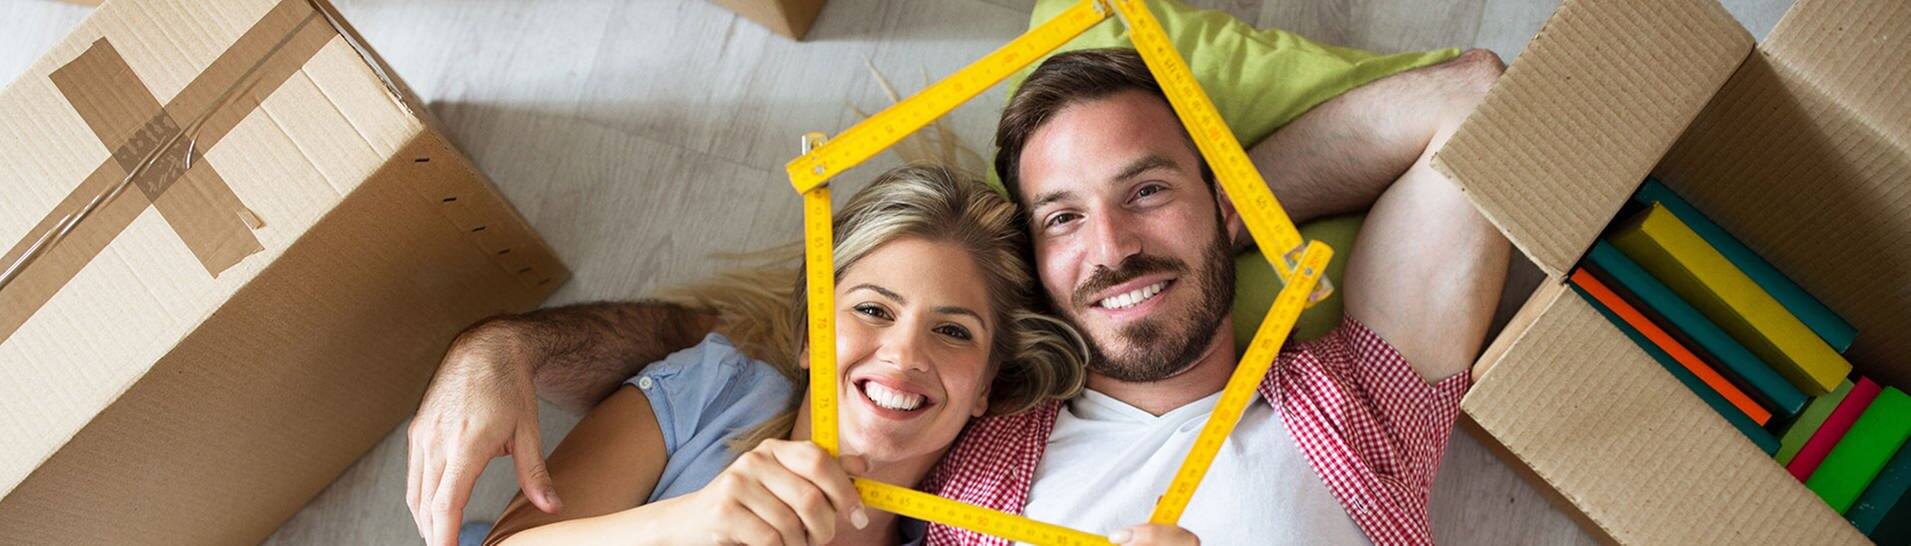 Mann und Frau liegen auf dem Boden, zwoschen Umzugskisten und lächeln in die Kamera  (Foto: Adobe Stock / didesign)